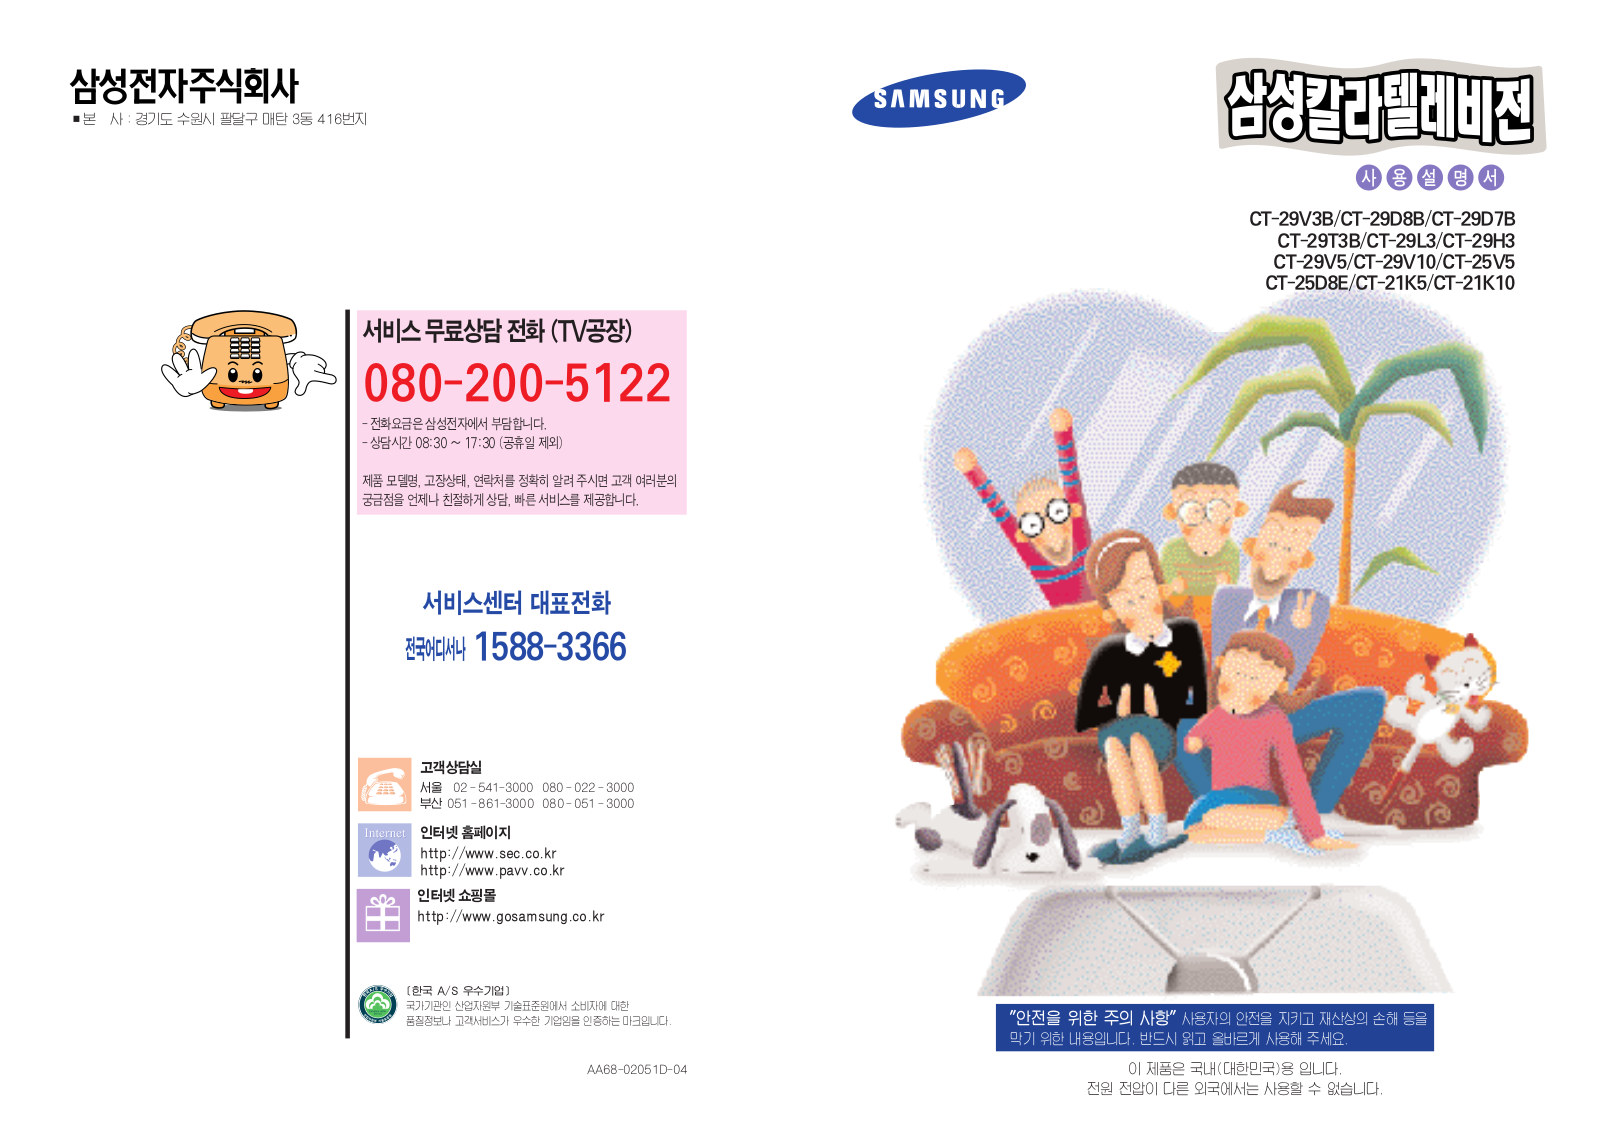 Samsung CT-29V5, CT-29V3B, CT-29T3B, CT-29L3, CT-29H3 User Manual